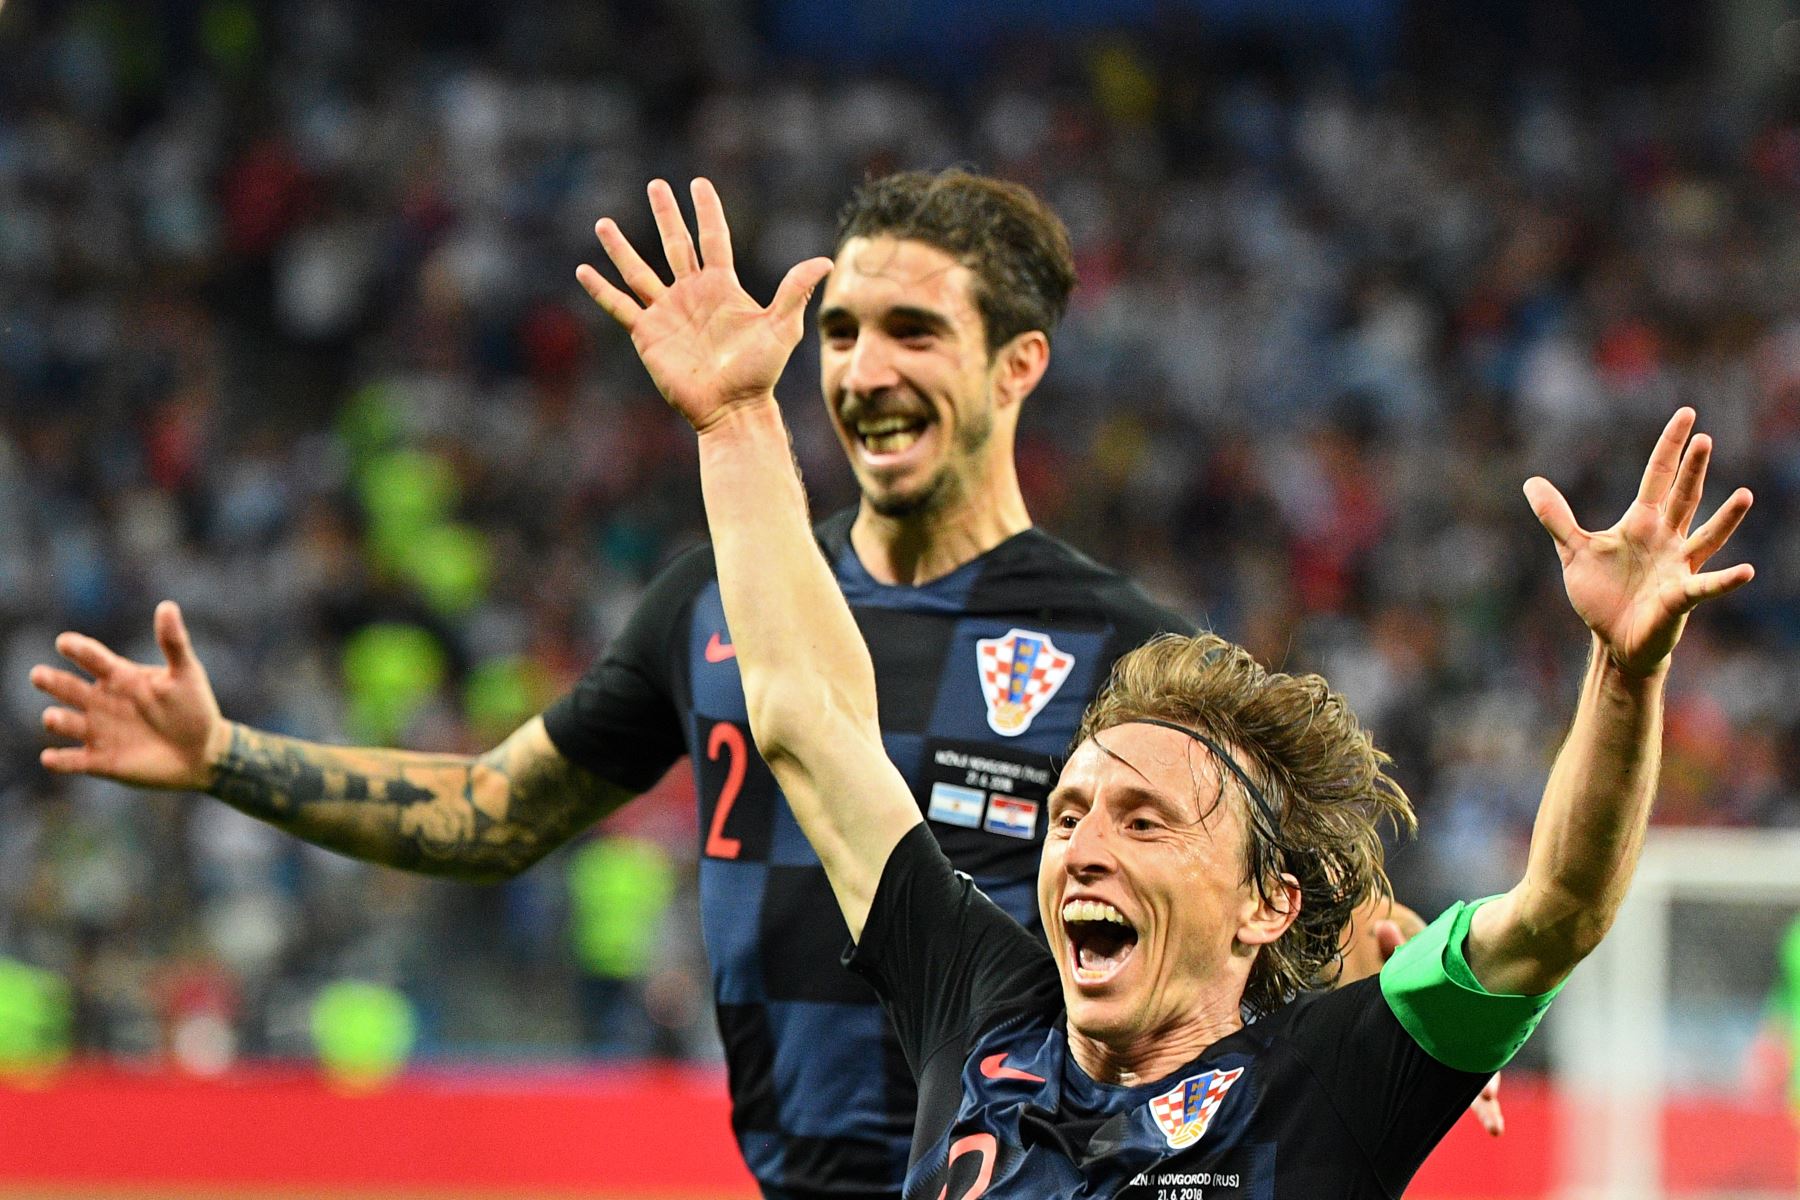 El mediocampista de Croacia Luka Modric celebra después de anotar su segundo gol durante el partido de fútbol del Grupo D de la Copa Mundial Rusia 2018 entre Argentina y Croacia en el Estadio Nizhny Novgorod en Nizhny Novgorod el 21 de junio de 2018.
 AFP